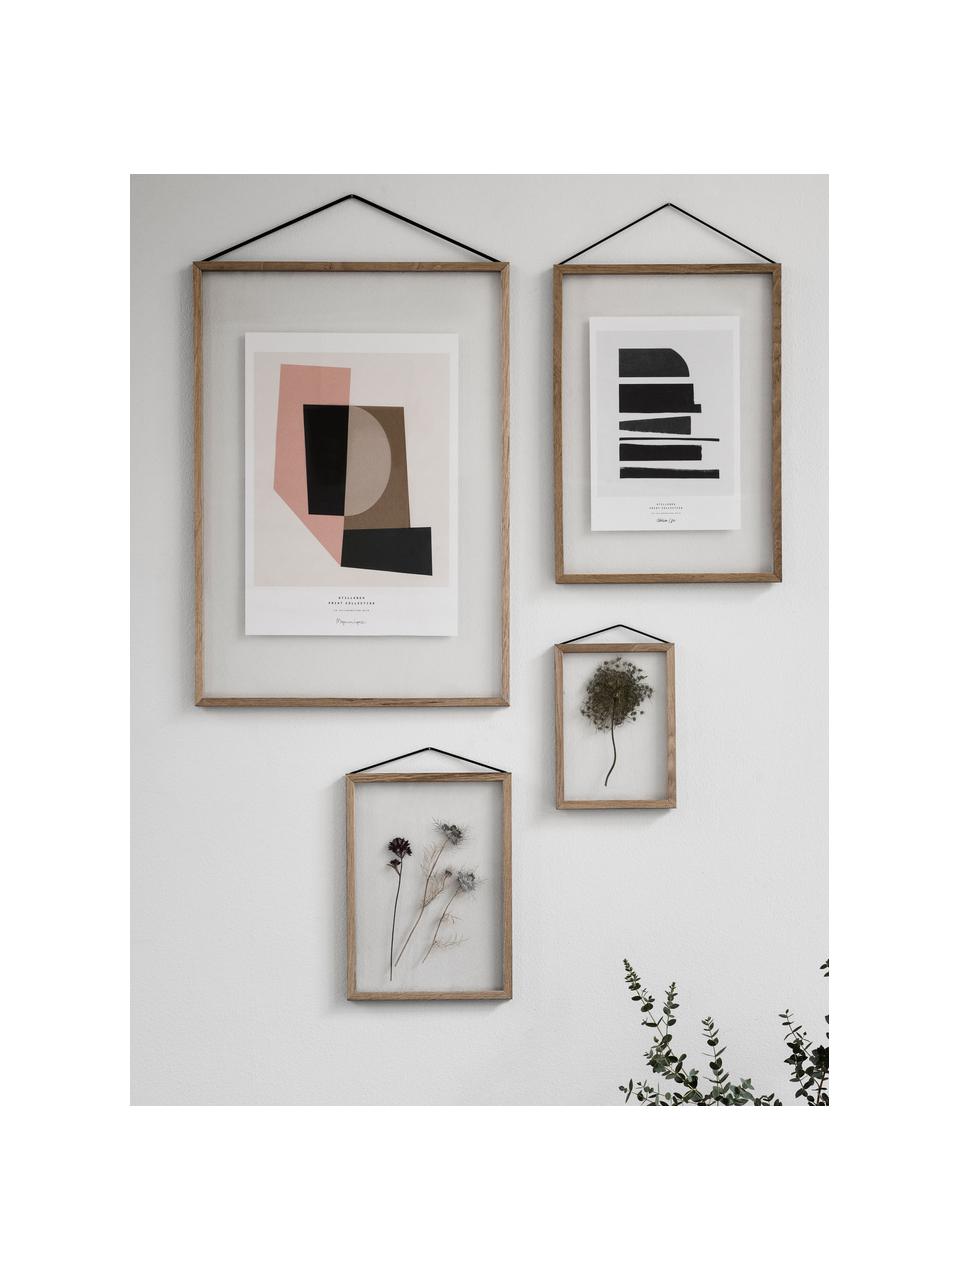 Fotolijstje Frame, Lijst: onbehandeld eikenhout, Lijst: eikenhoutkleurig. Ophanging: zwart. Voor- en achterzijde: transparant, 32 x 44 cm